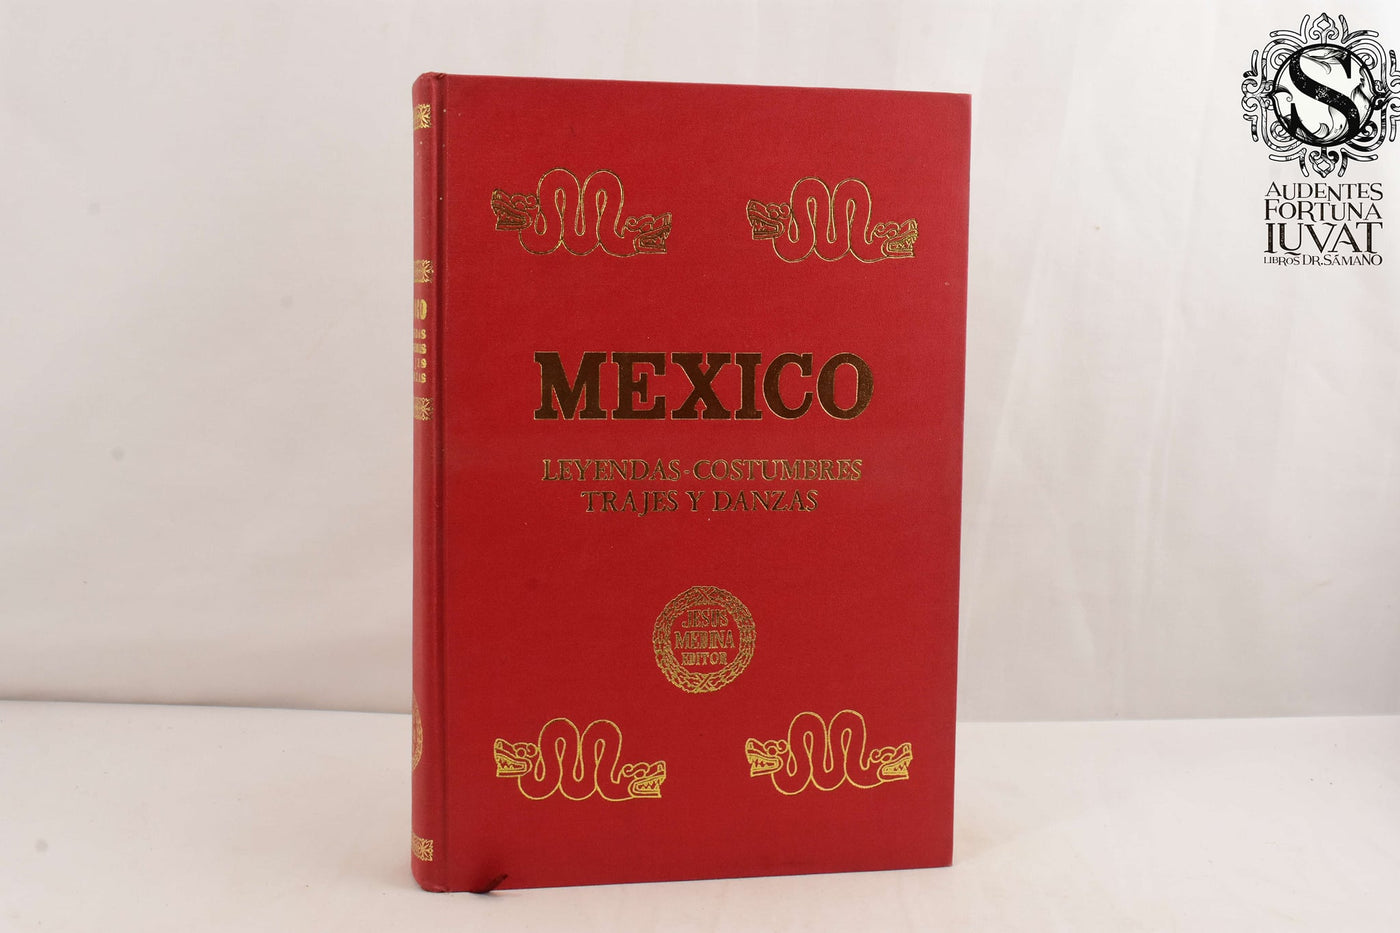 MÉXICO, Leyendas, Costumbres, Trajes y Danzas - Luis Álvarez